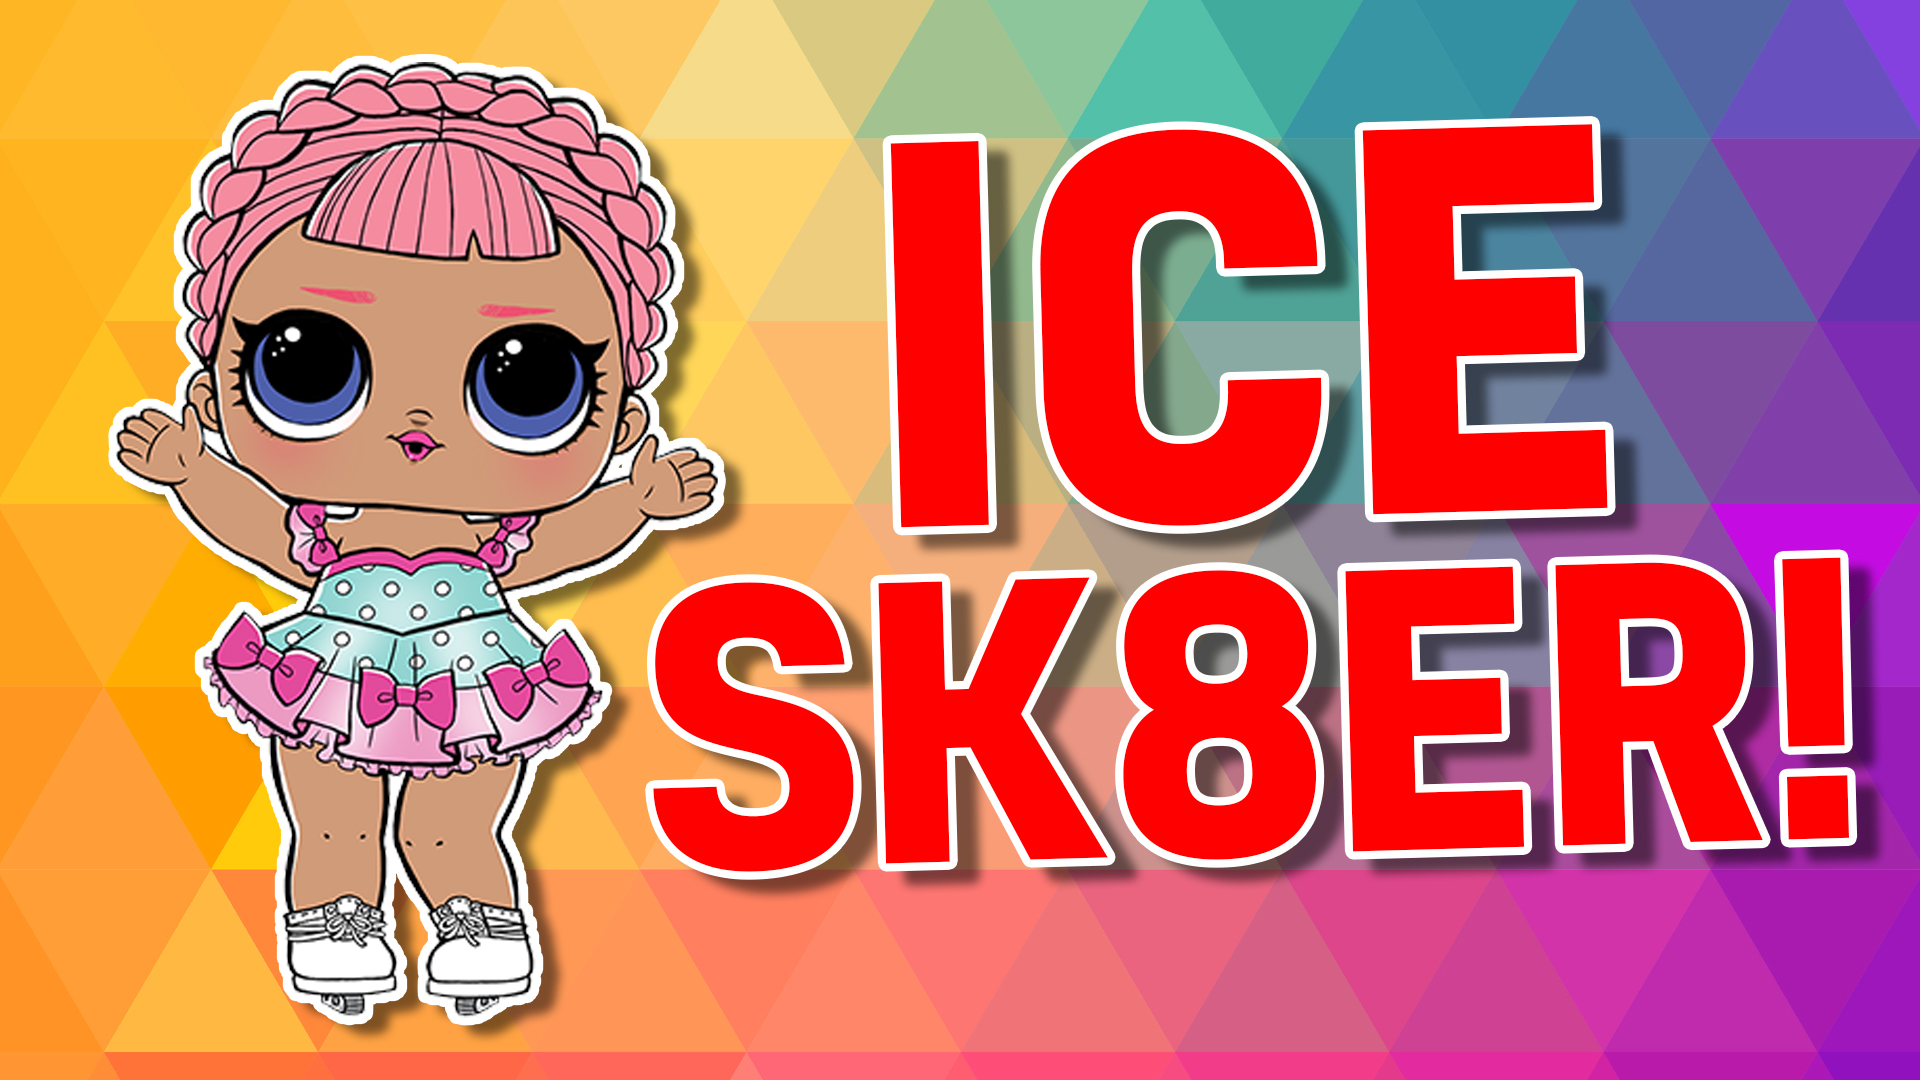 Ice Sk8er